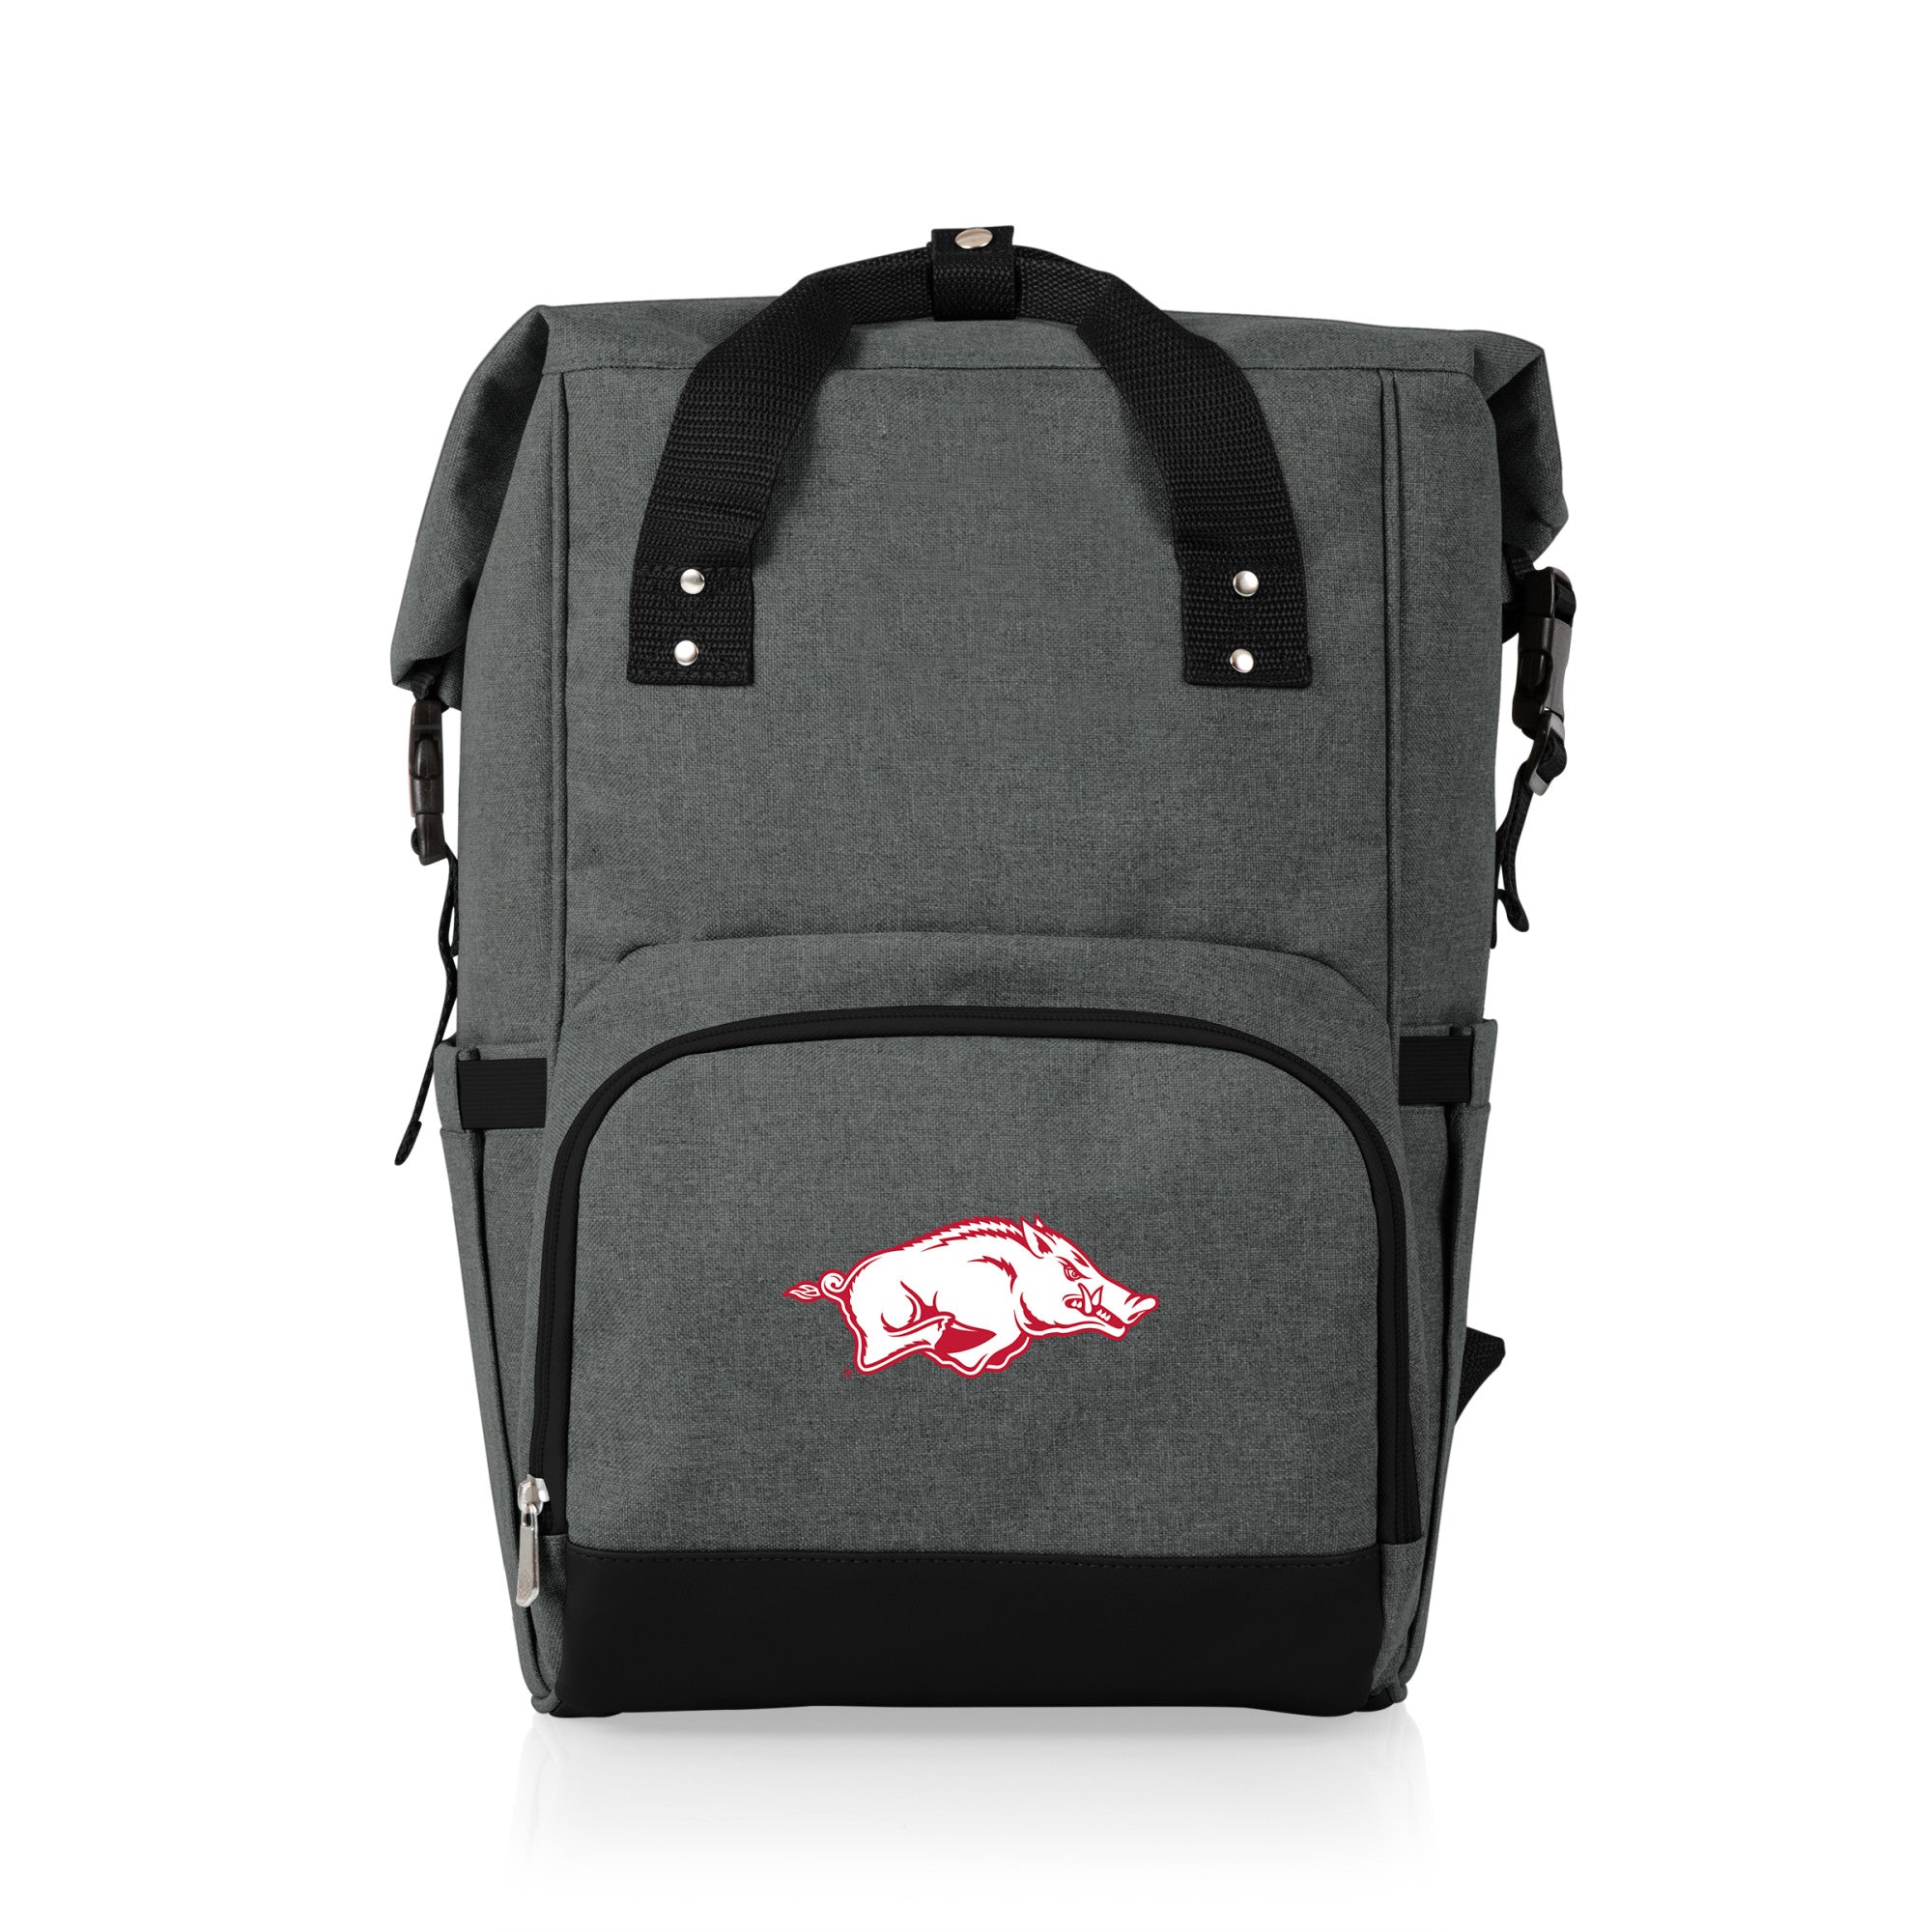 Arkansas Razorbacks - On The Go Roll-Top Backpack Cooler